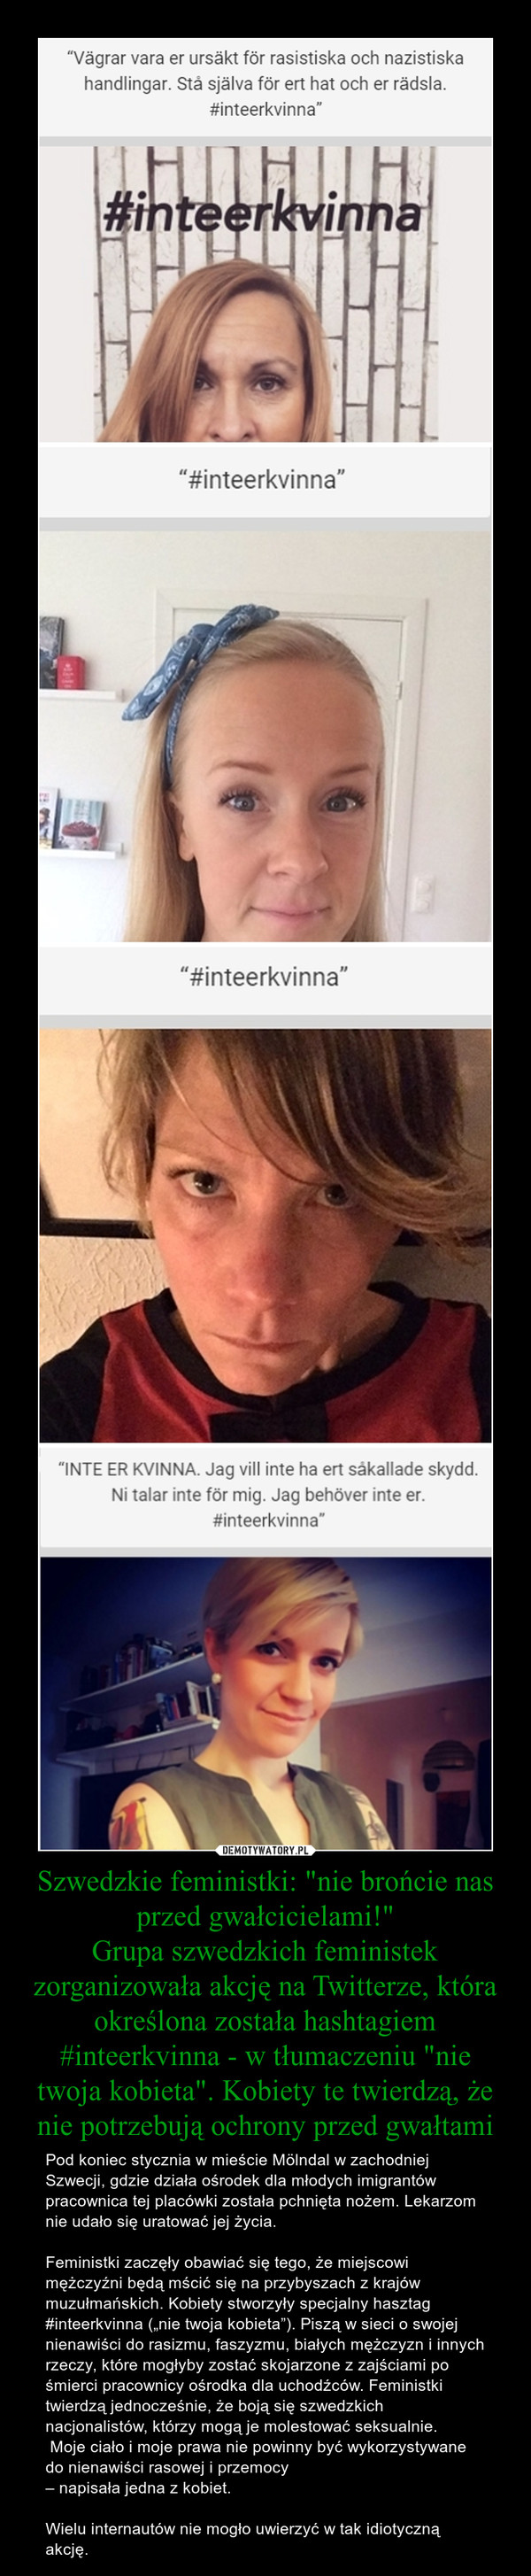 Szwedzkie feministki: "nie brońcie nas przed gwałcicielami!"
Grupa szwedzkich feministek zorganizowała akcję na Twitterze, która określona została hashtagiem #inteerkvinna - w tłumaczeniu "nie twoja kobieta". Kobiety te twierdzą, że nie potrzebują ochrony